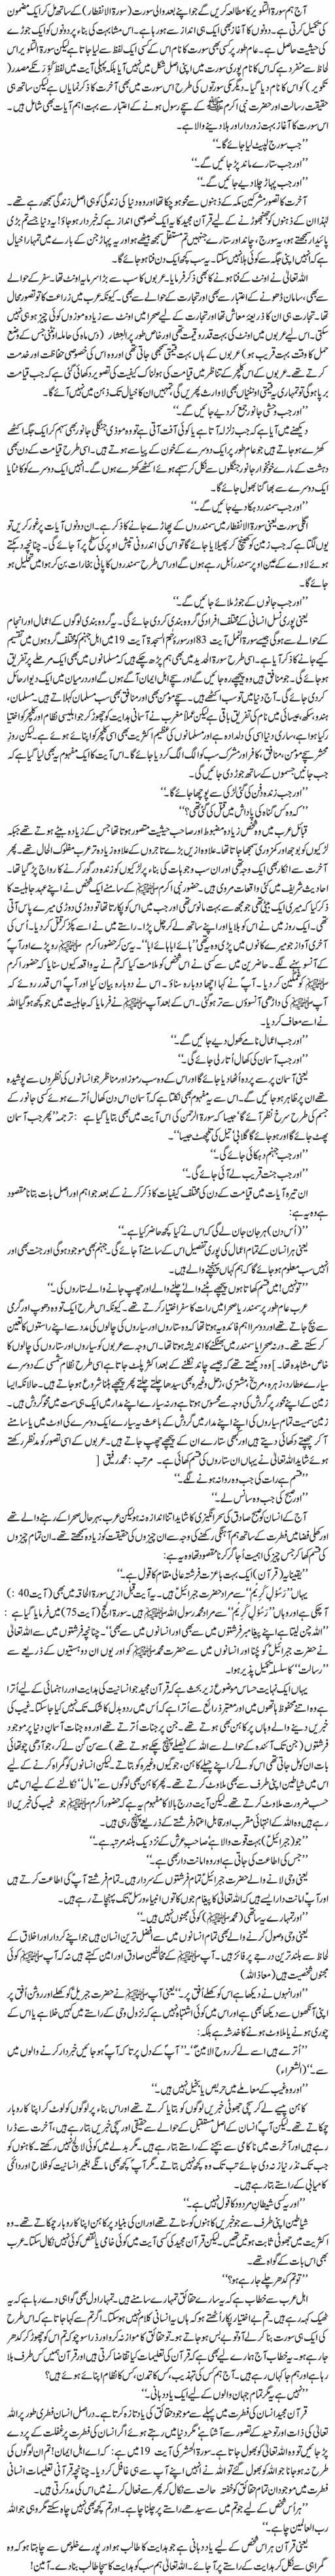 Nazool E Quran Ka Shafaf Nizam